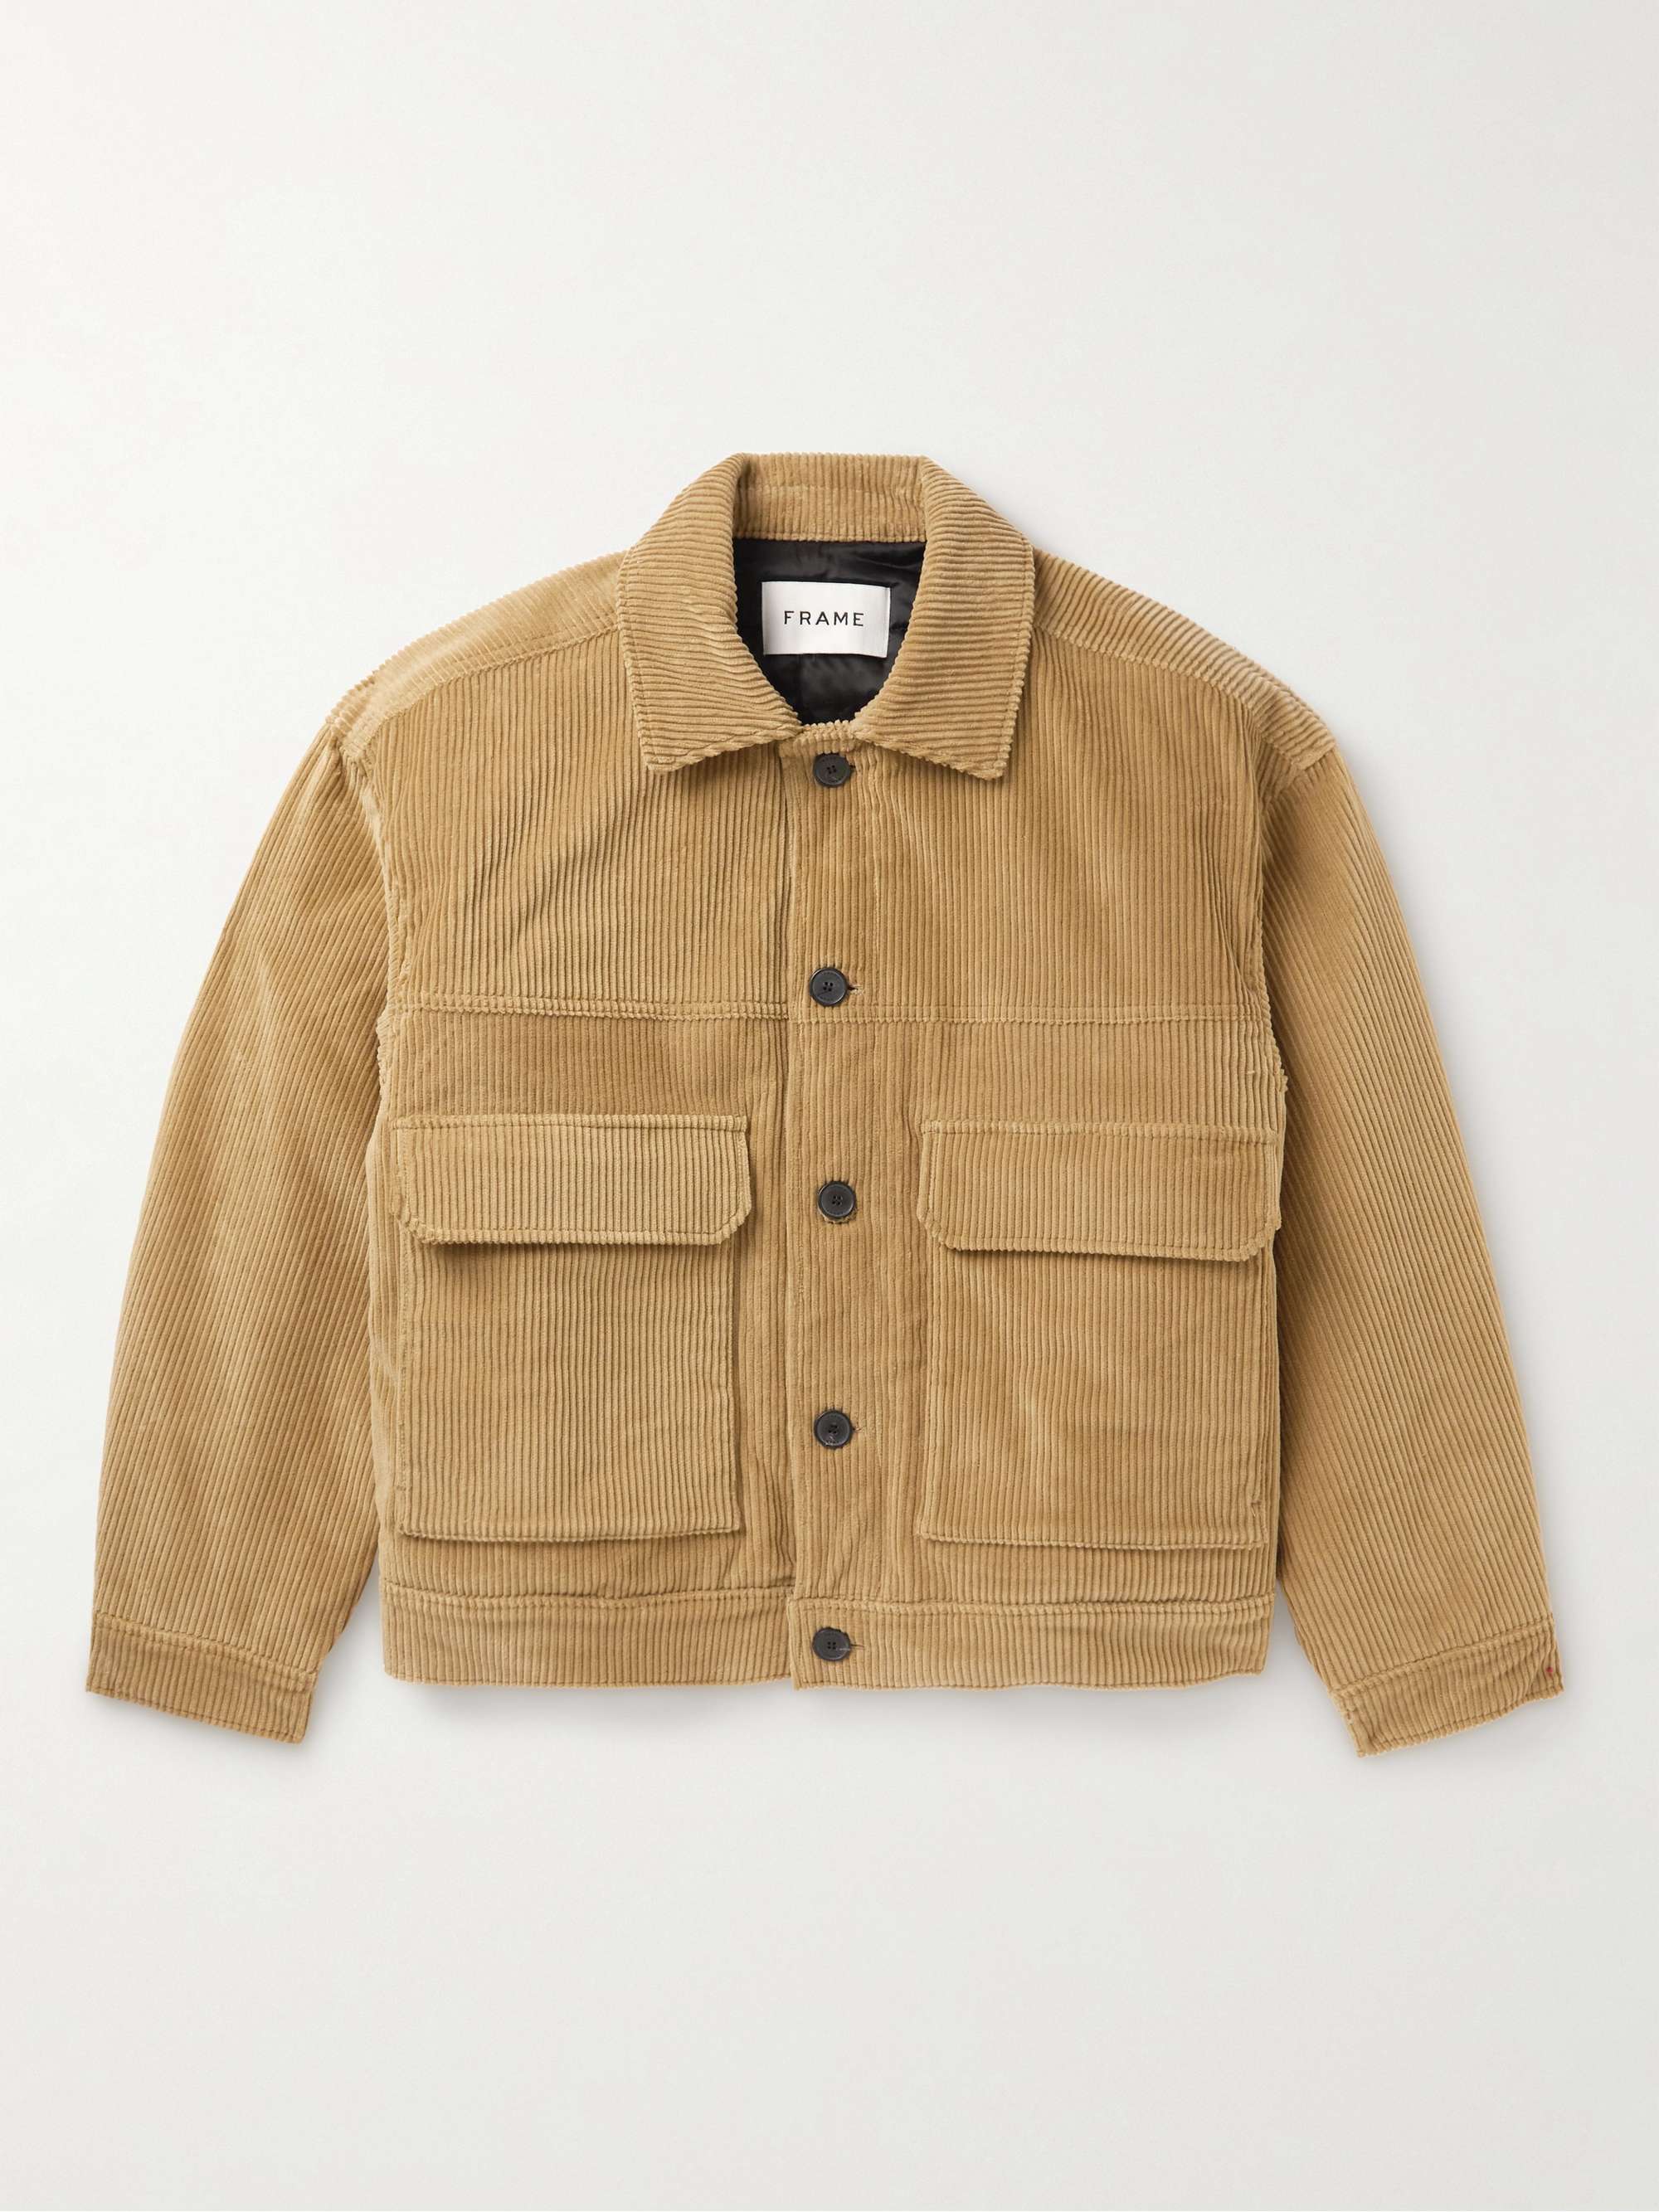 FRAME Cotton-Blend Corduroy Jacket | MR PORTER